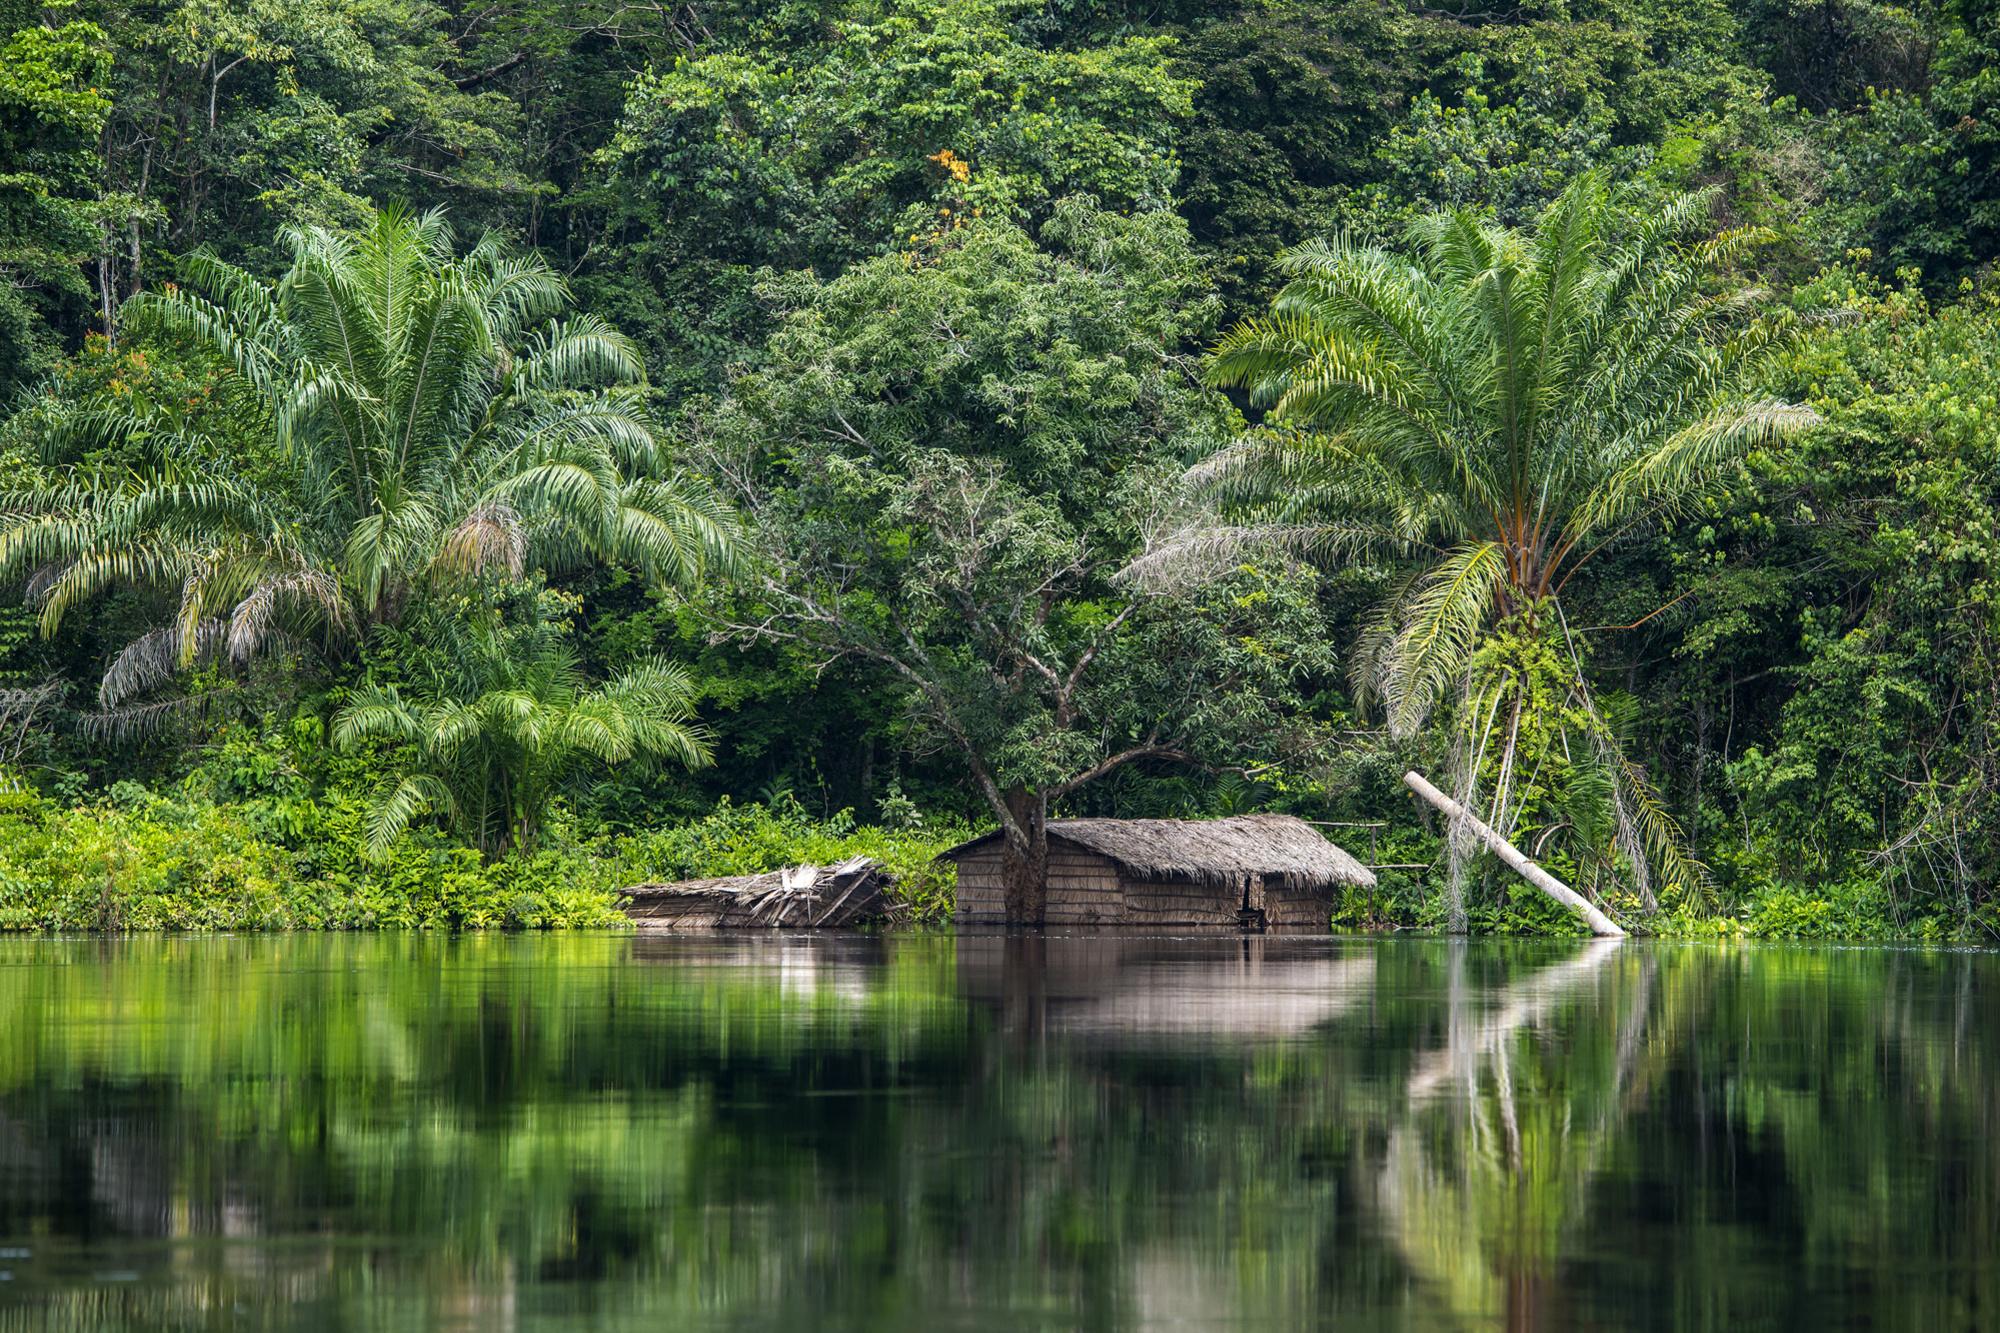 RDC : un plan audacieux pour sauver la deuxième plus grande forêt du monde